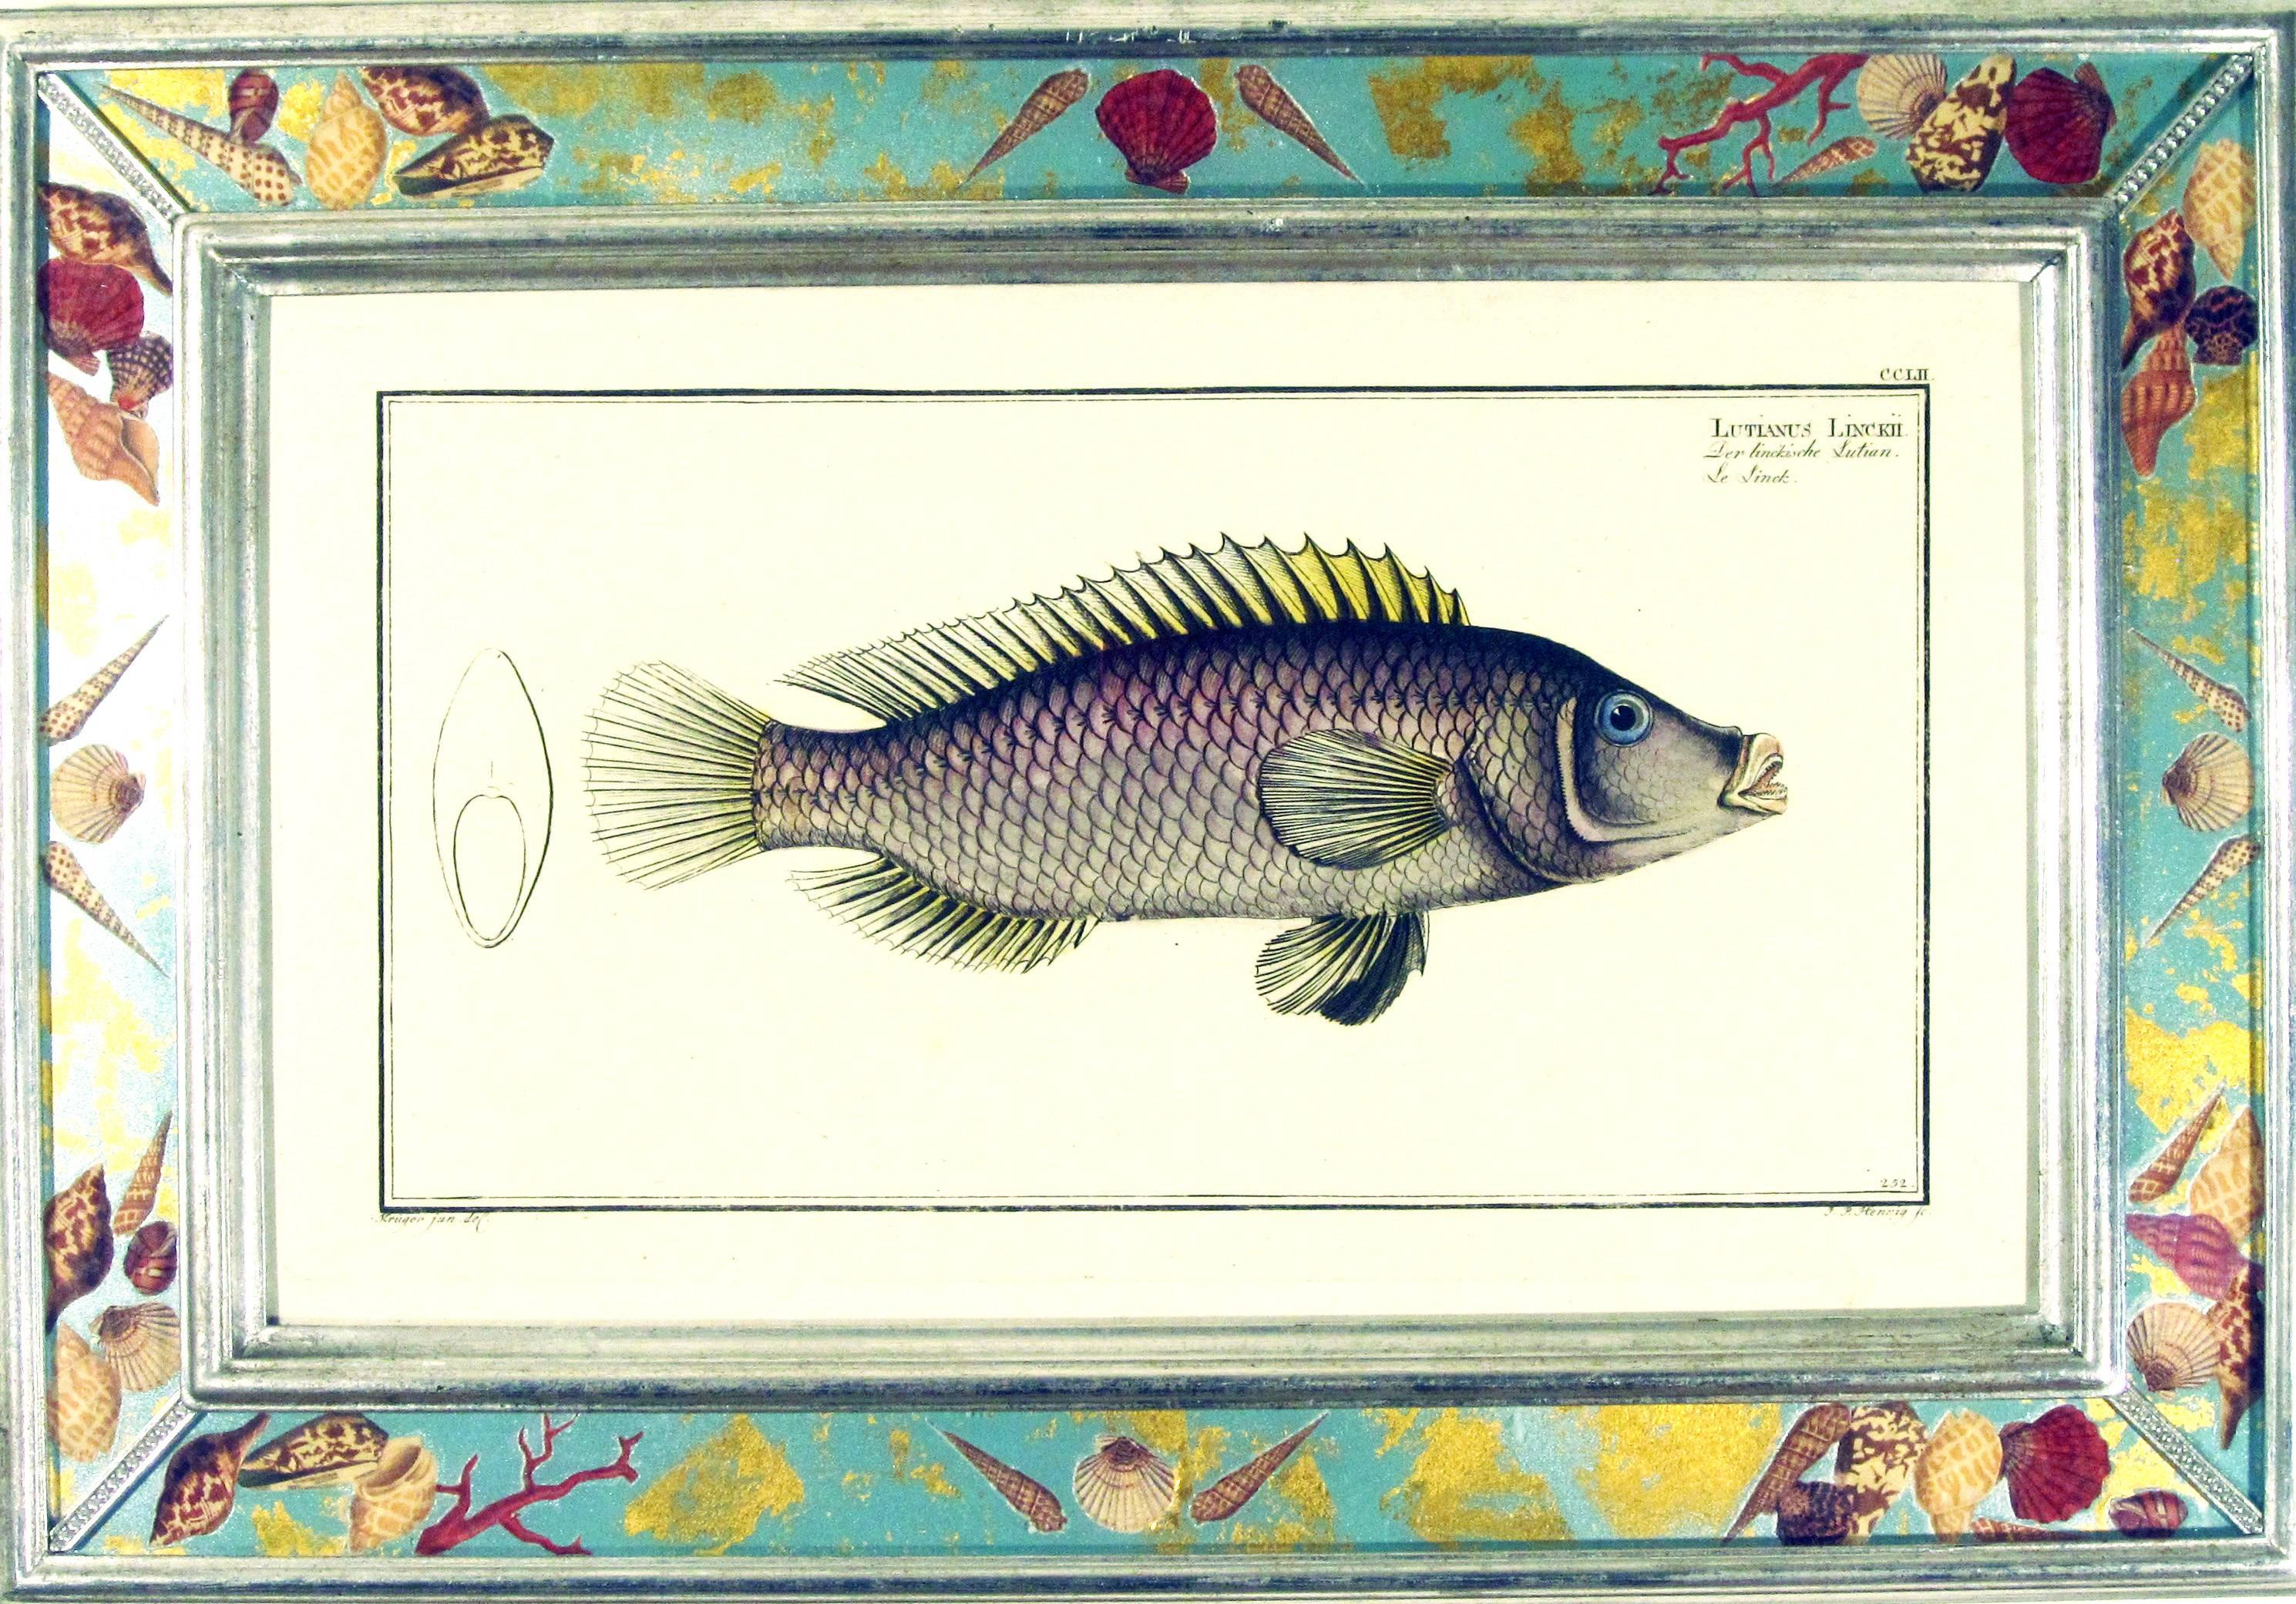 Gravures de poissons du 18e siècle par Marcus Bloch,
Une paire,
vers 1780.

Une belle paire d'estampes de poissons par Marcus Bloch avec un cadre en découpage.

Dimensions : 13 3/4 pouces x 20 pouces de large.

Bloch a publié des tirages in-folio et